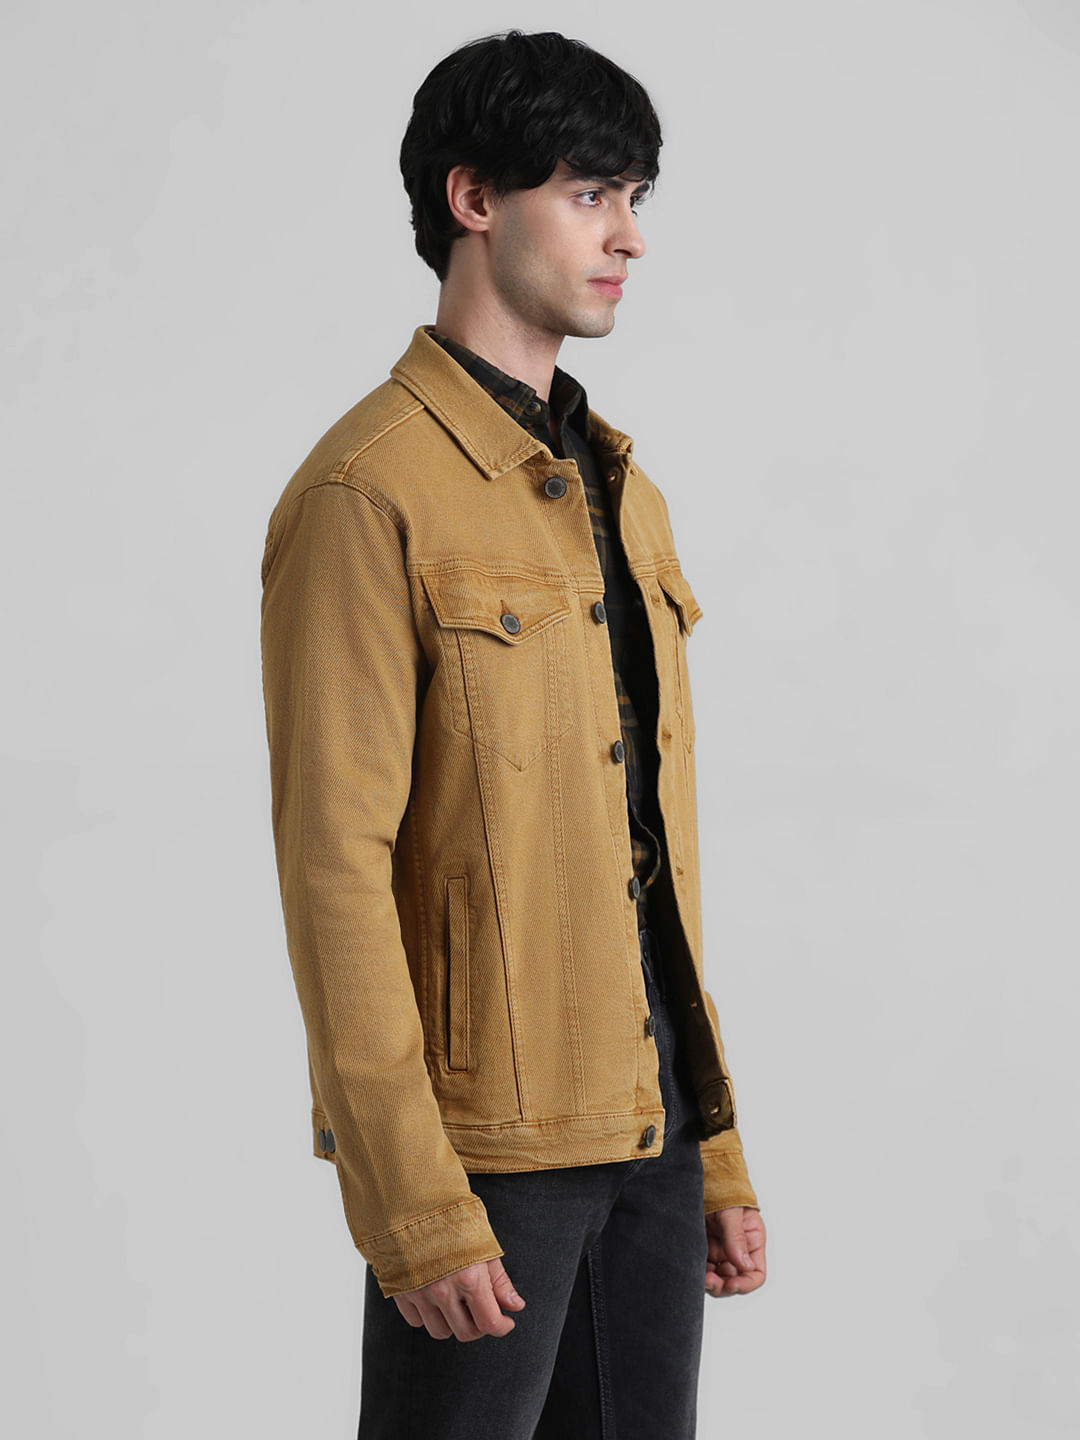 Buy Celio Solid Brown Long Sleeves Denim Jacket at Amazon.in